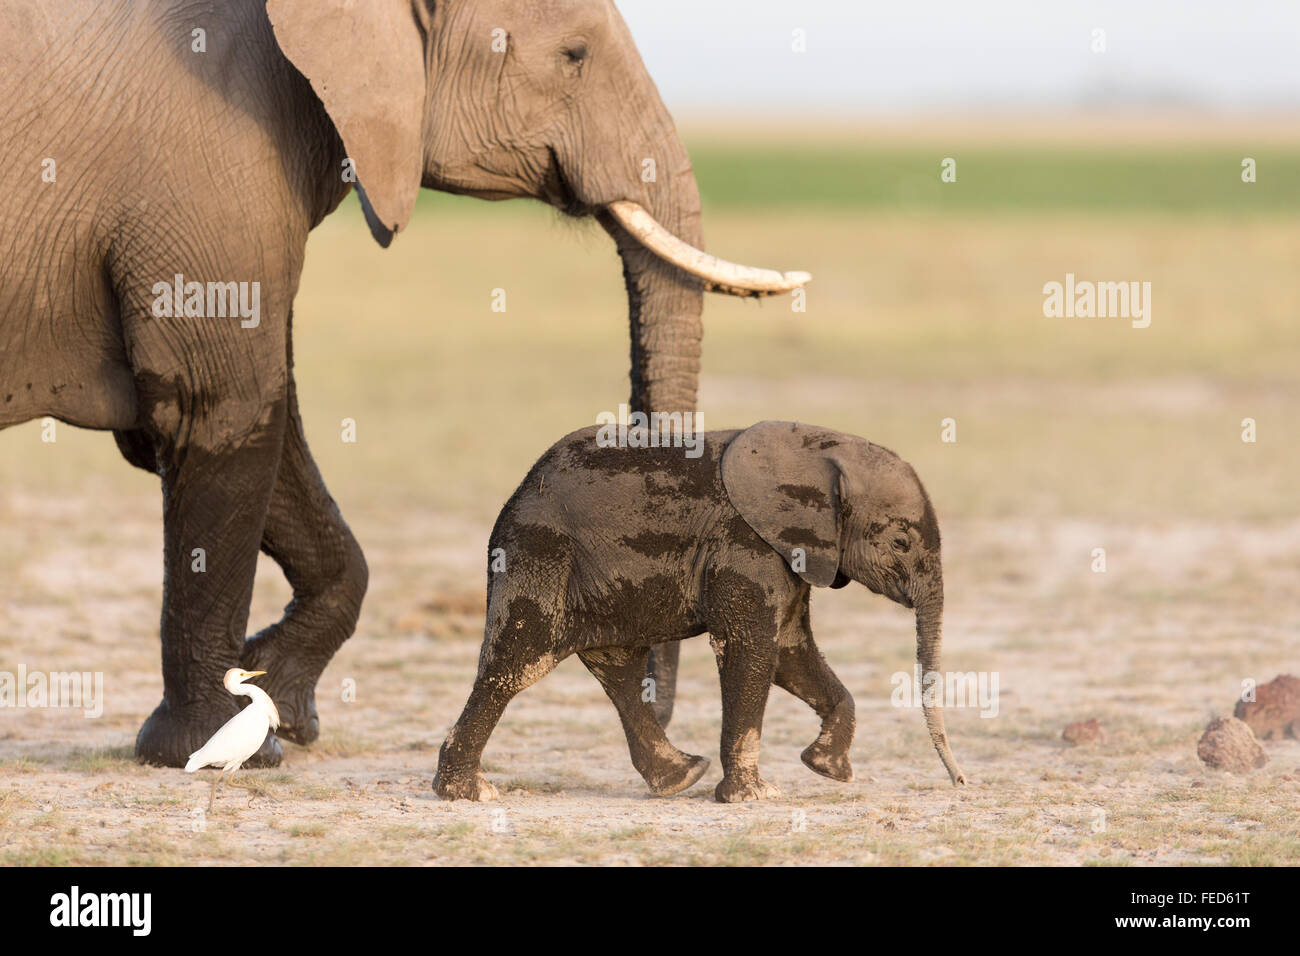 African Elephant Amboseli National Park Kenya Stock Photo